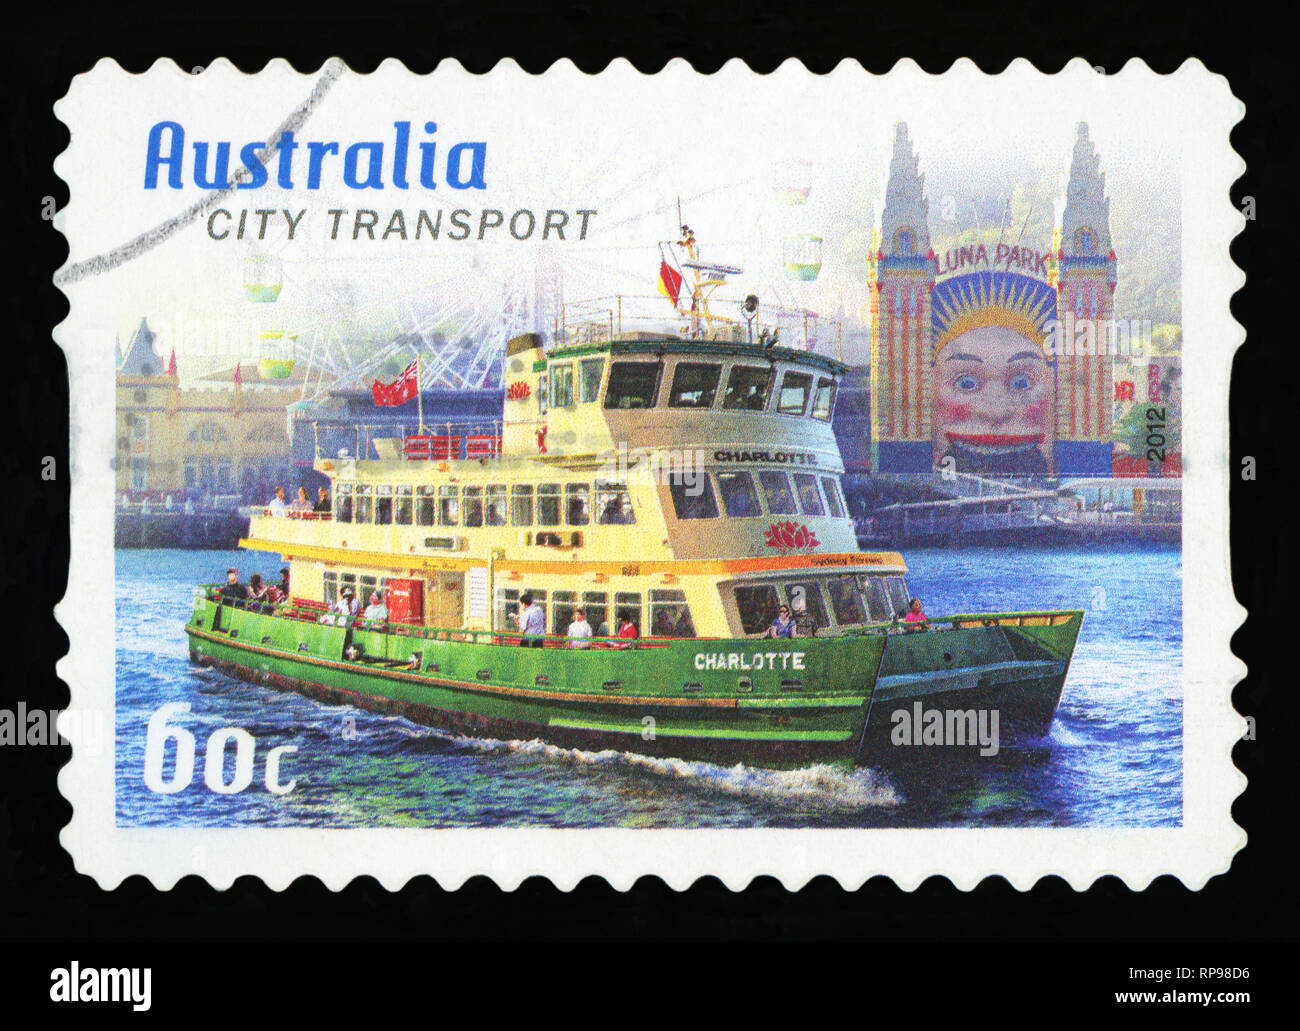 L'AUSTRALIE - circa 2012 : timbre imprimé en Australie montre la ville Transports, Sydney, 2012, série, vers 2012 Banque D'Images